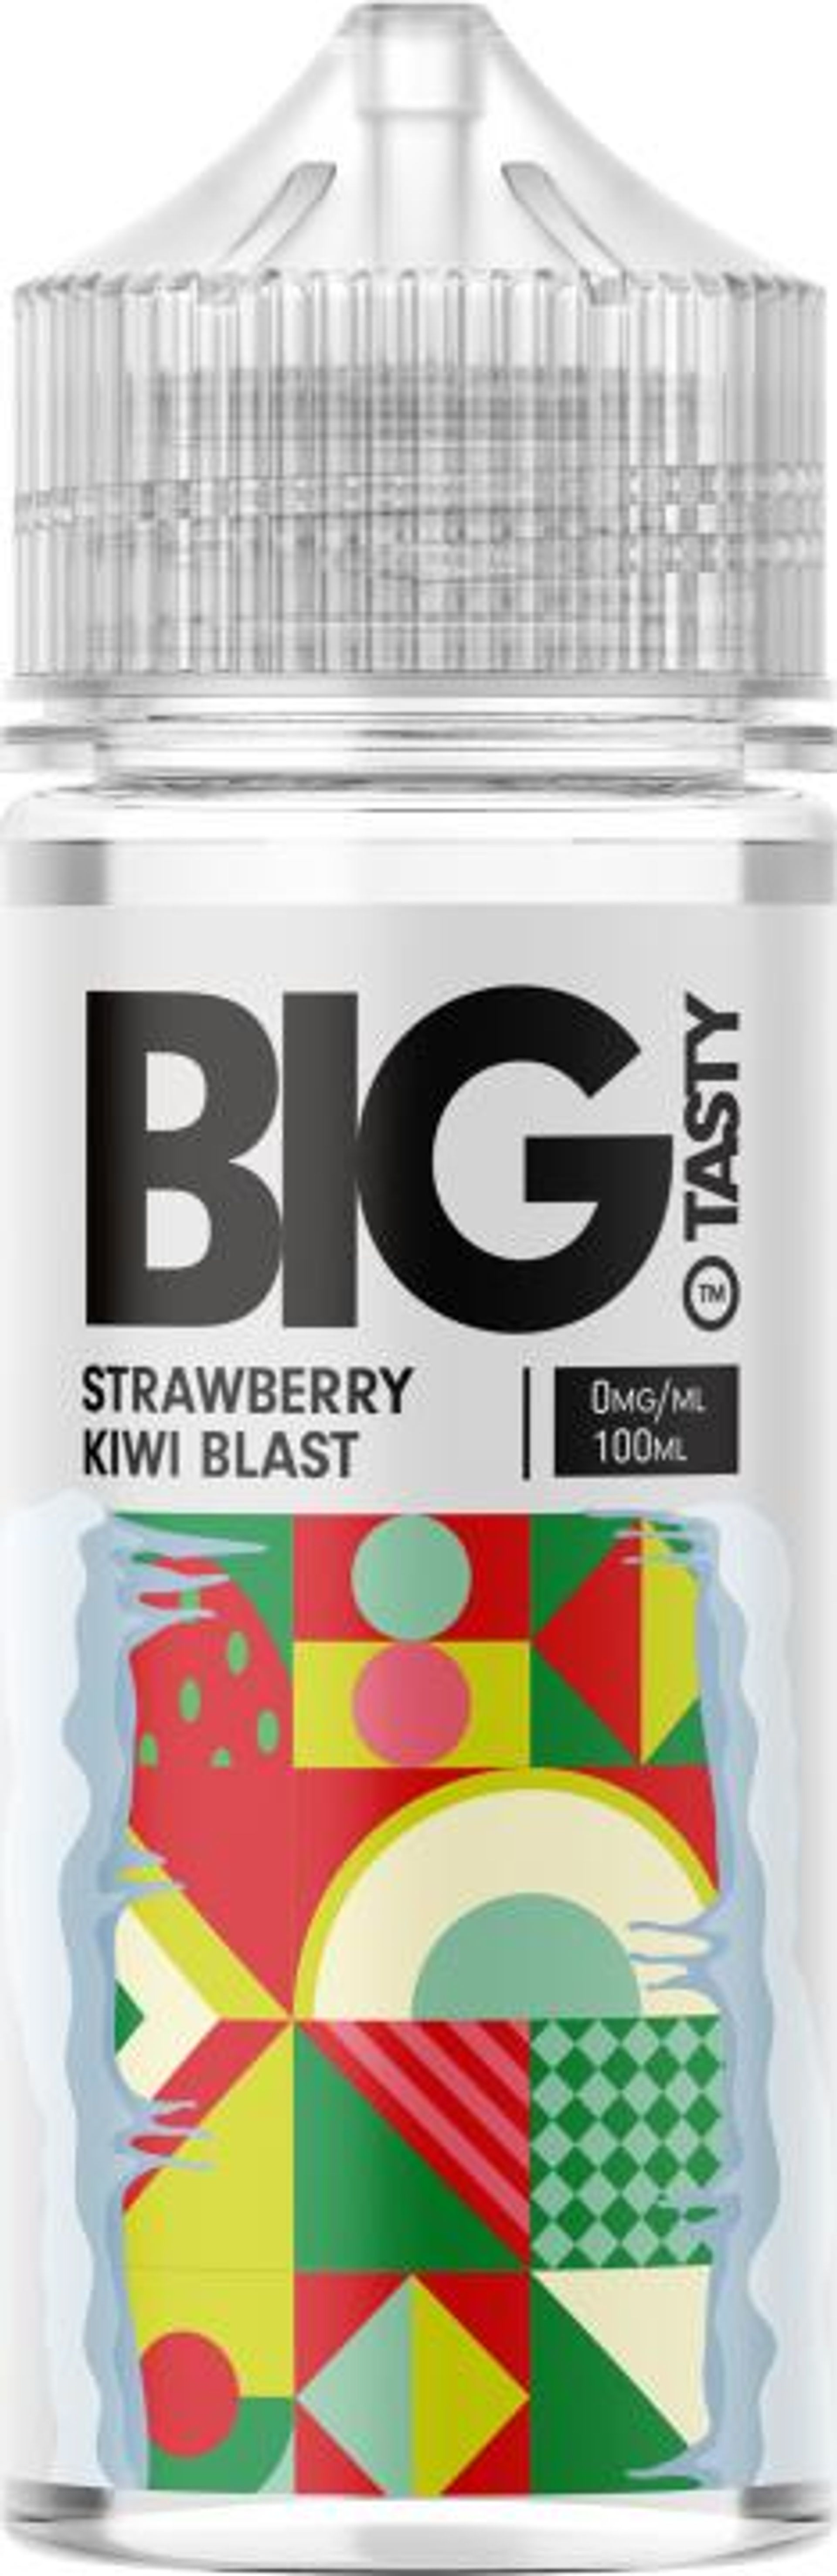 Image of Strawberry Kiwi Blast by Big Tasty